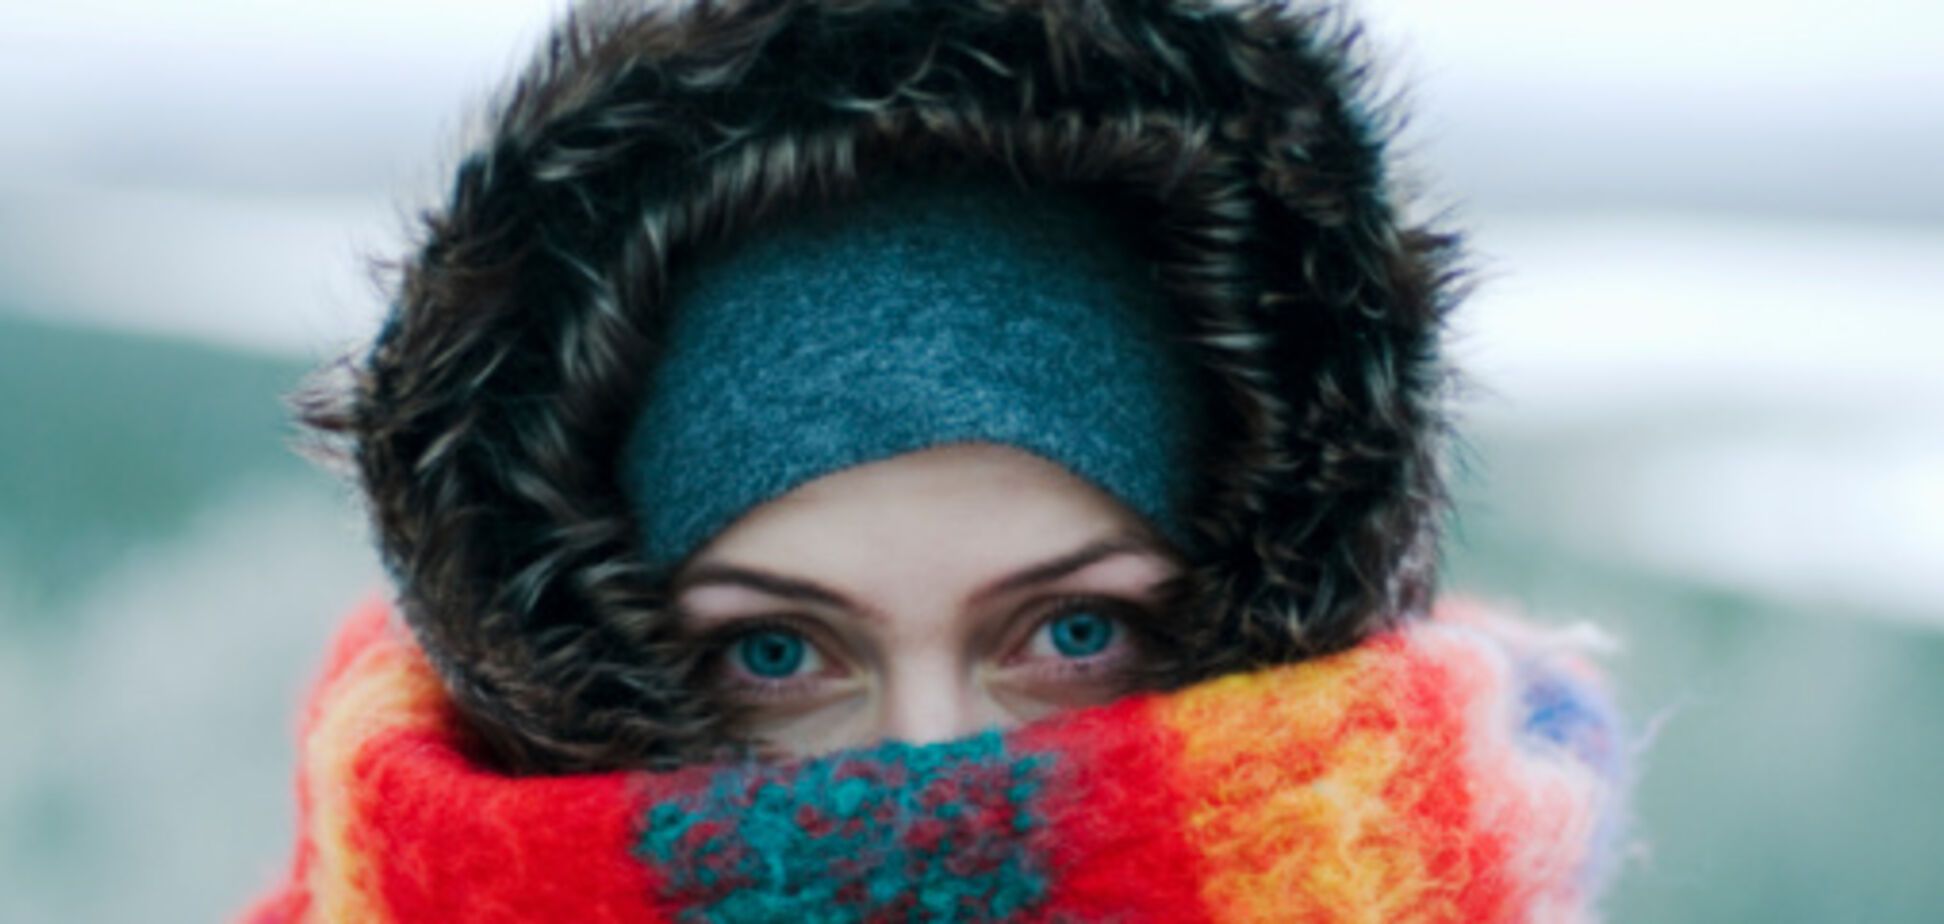 Идут сильнейшие морозы: прогноз погоды на начало недели в Украине